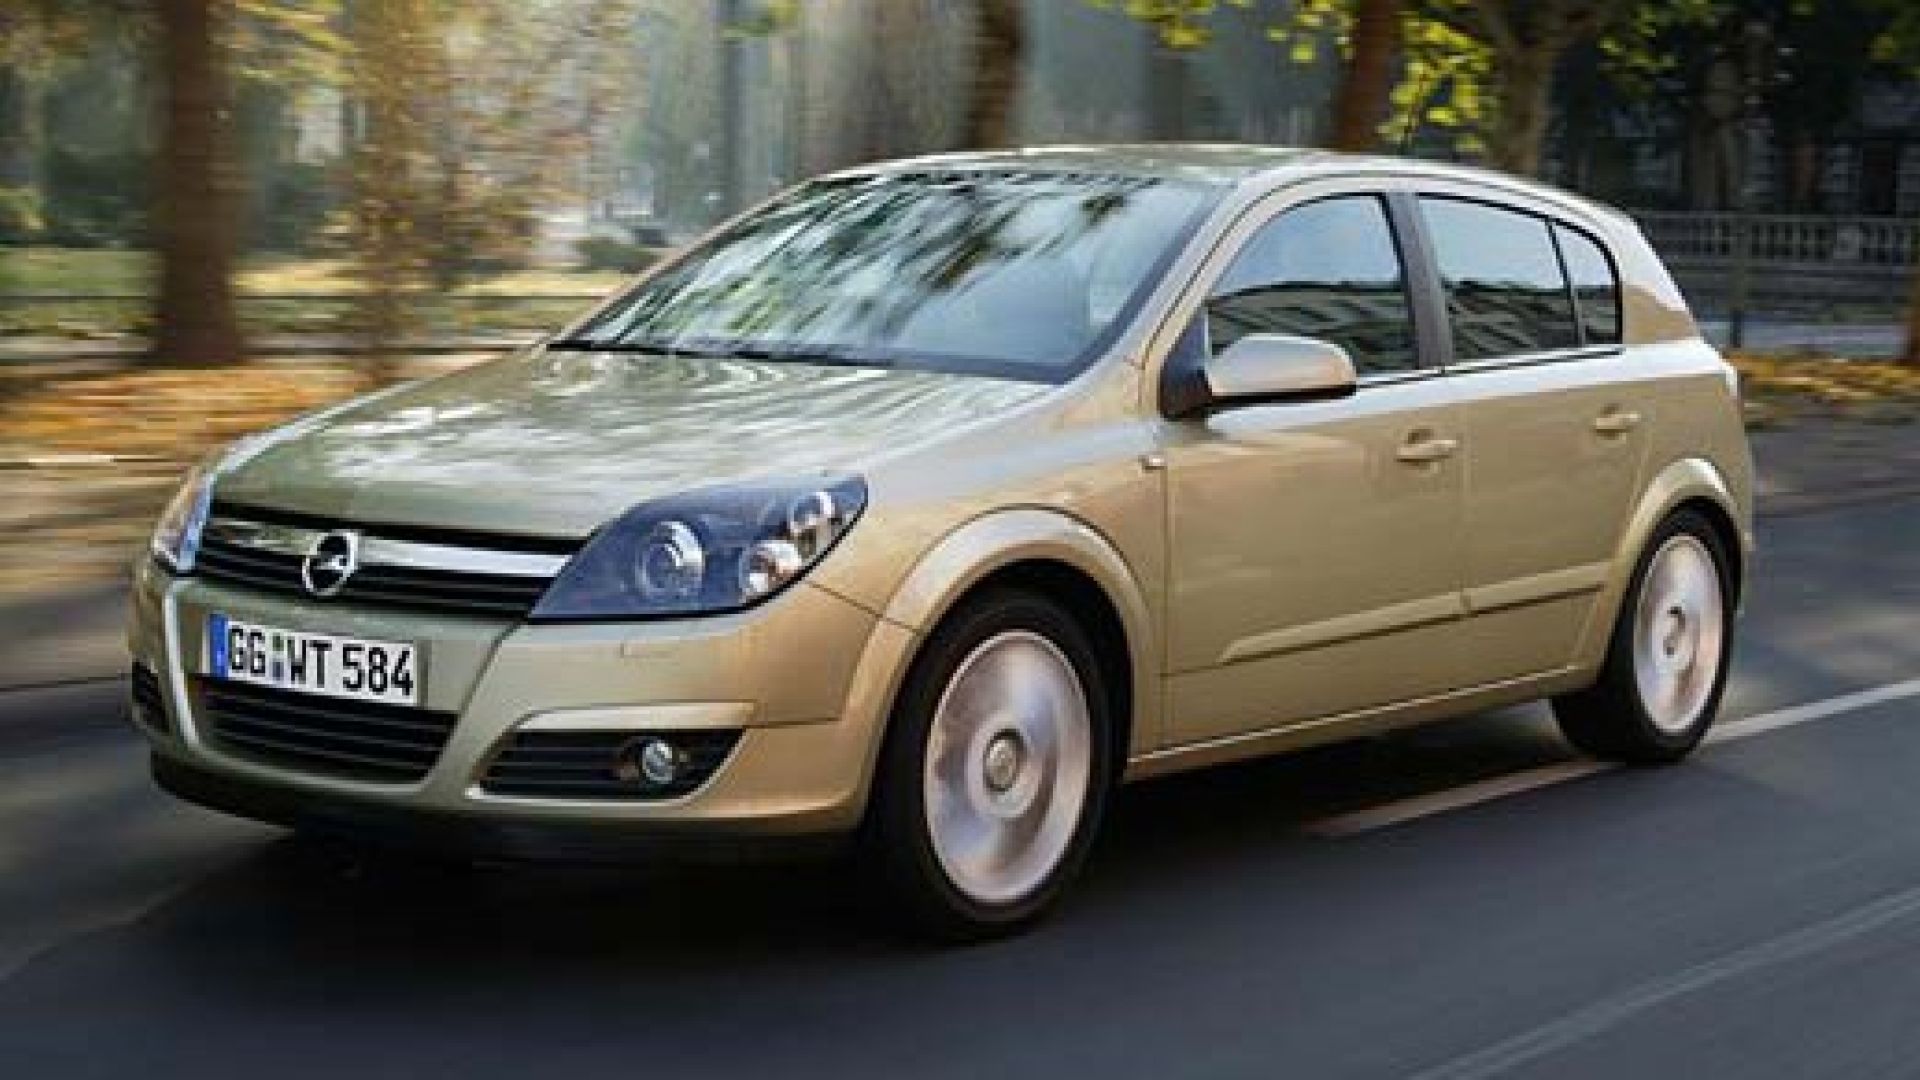 Astra 1.7 download. Opel Astra 1.4 2006. Opel Astra 1.4 2004. Opel Astra Classic.